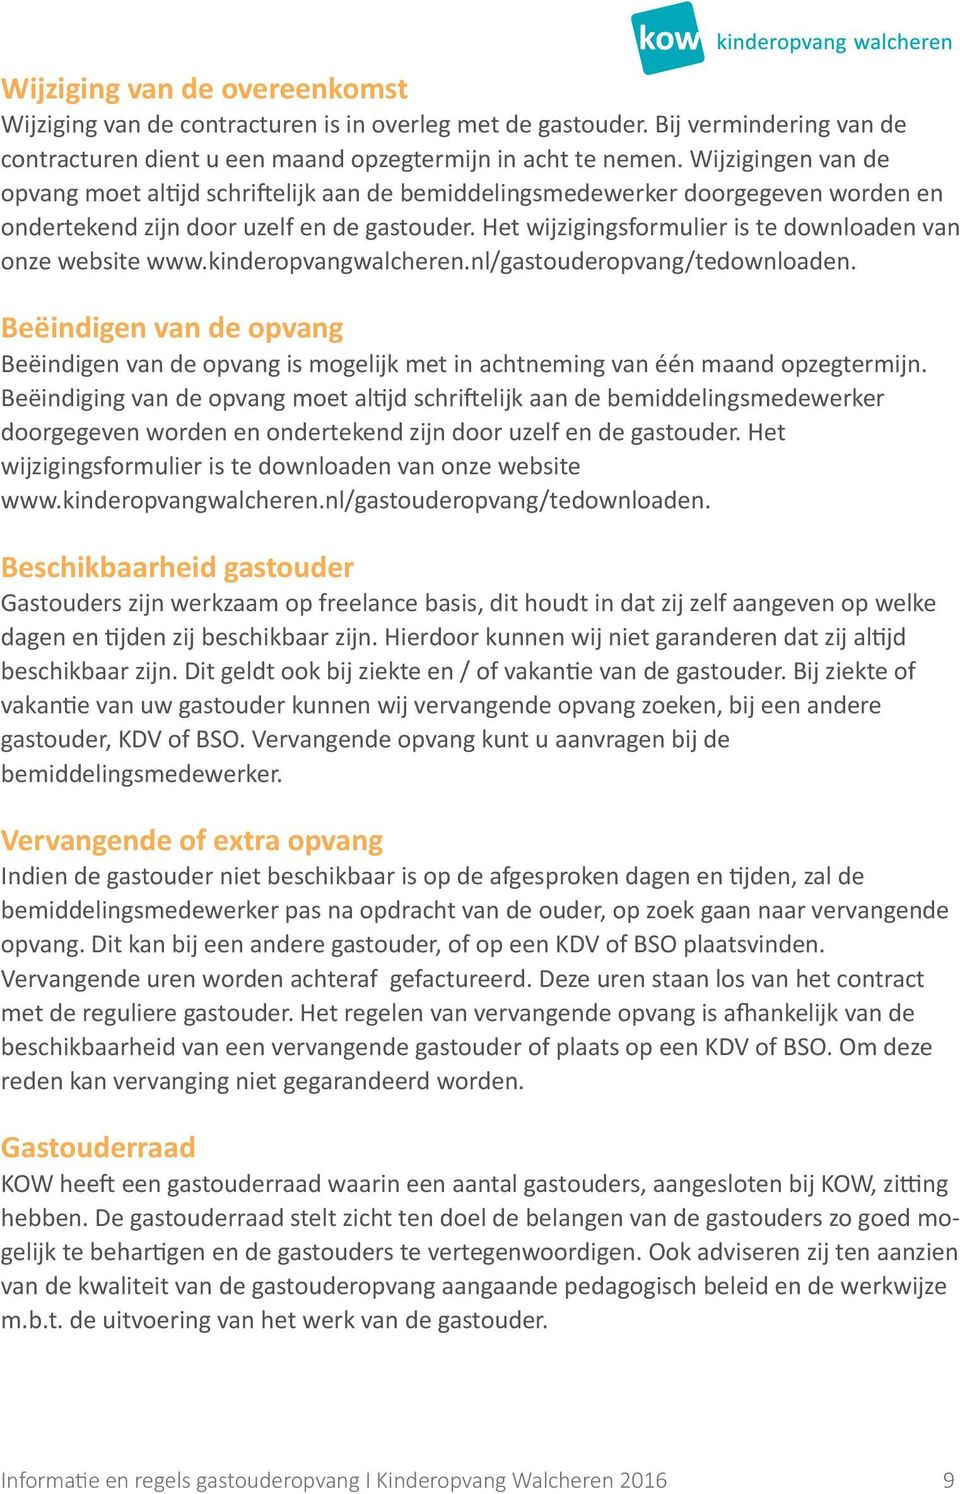 Het wijzigingsformulier is te downloaden van onze website www.kinderopvangwalcheren.nl/gastouderopvang/tedownloaden.